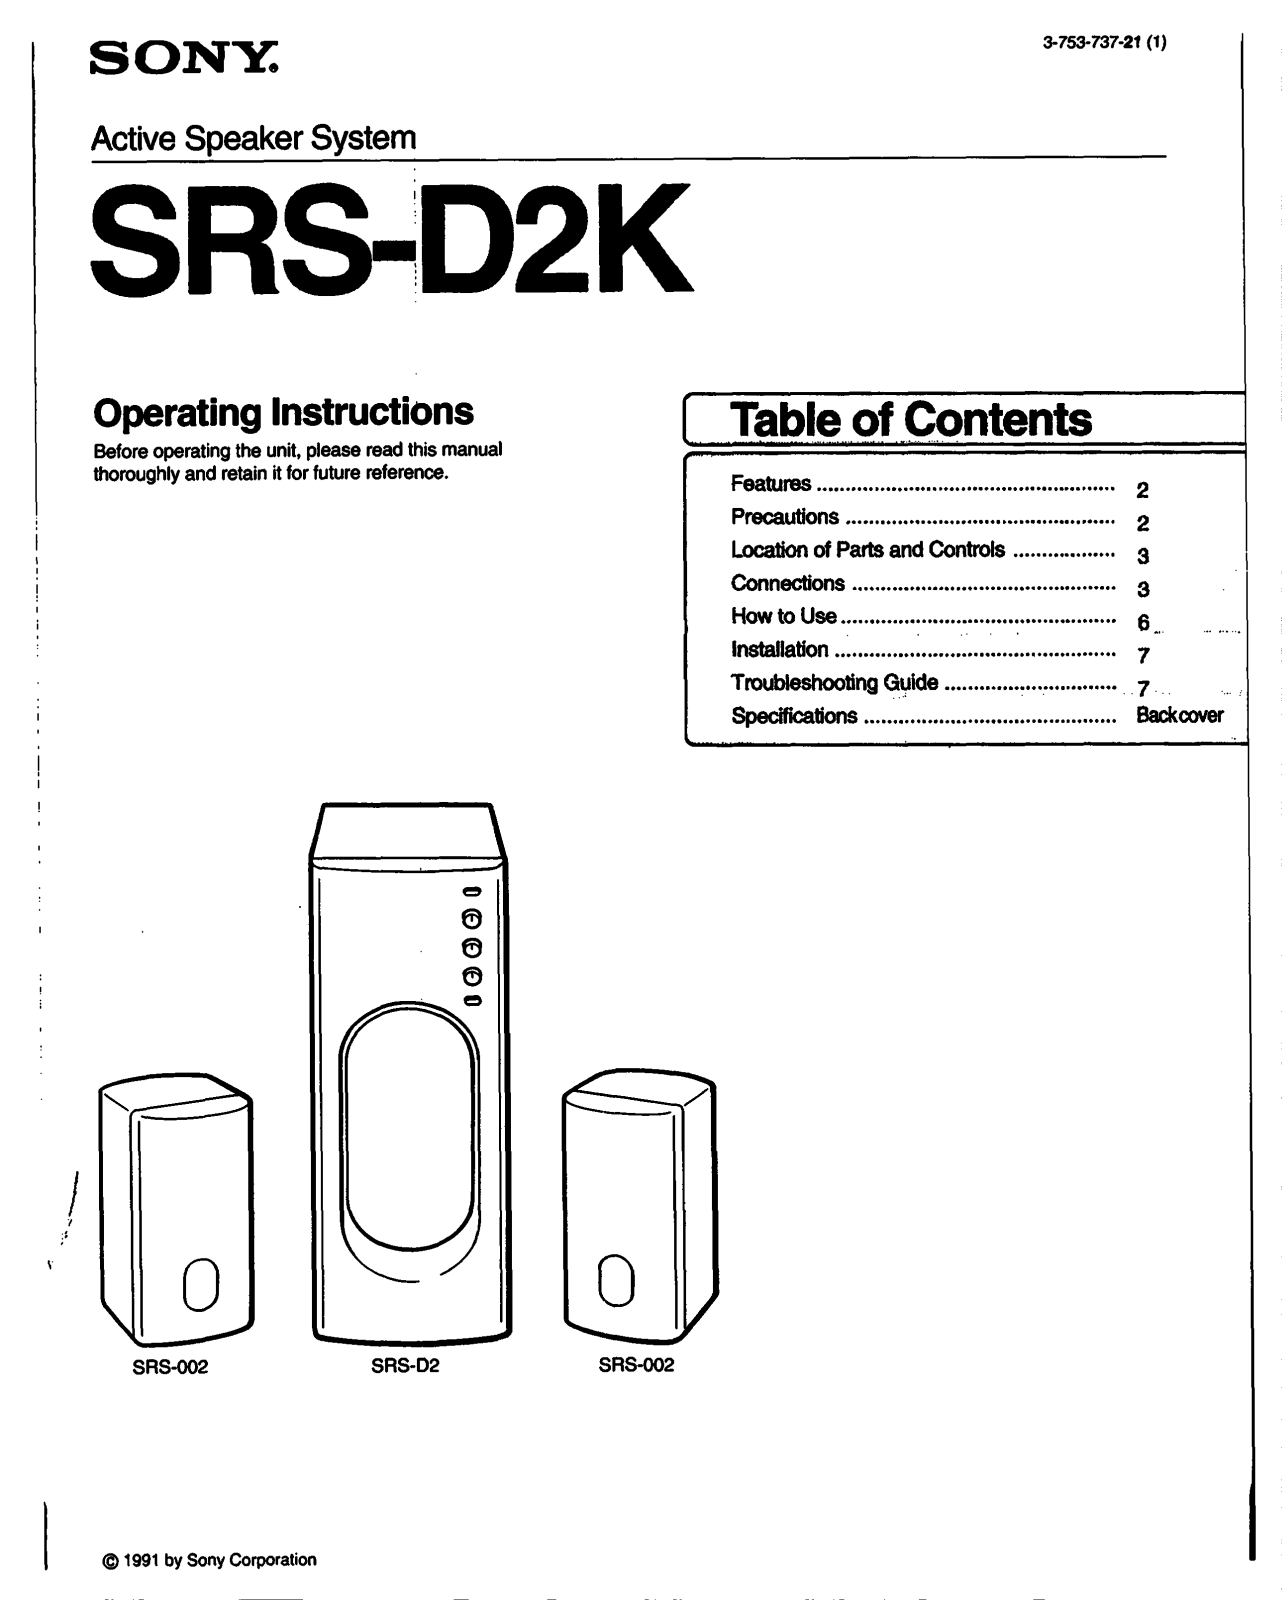 Sony SRSD2K User Manual